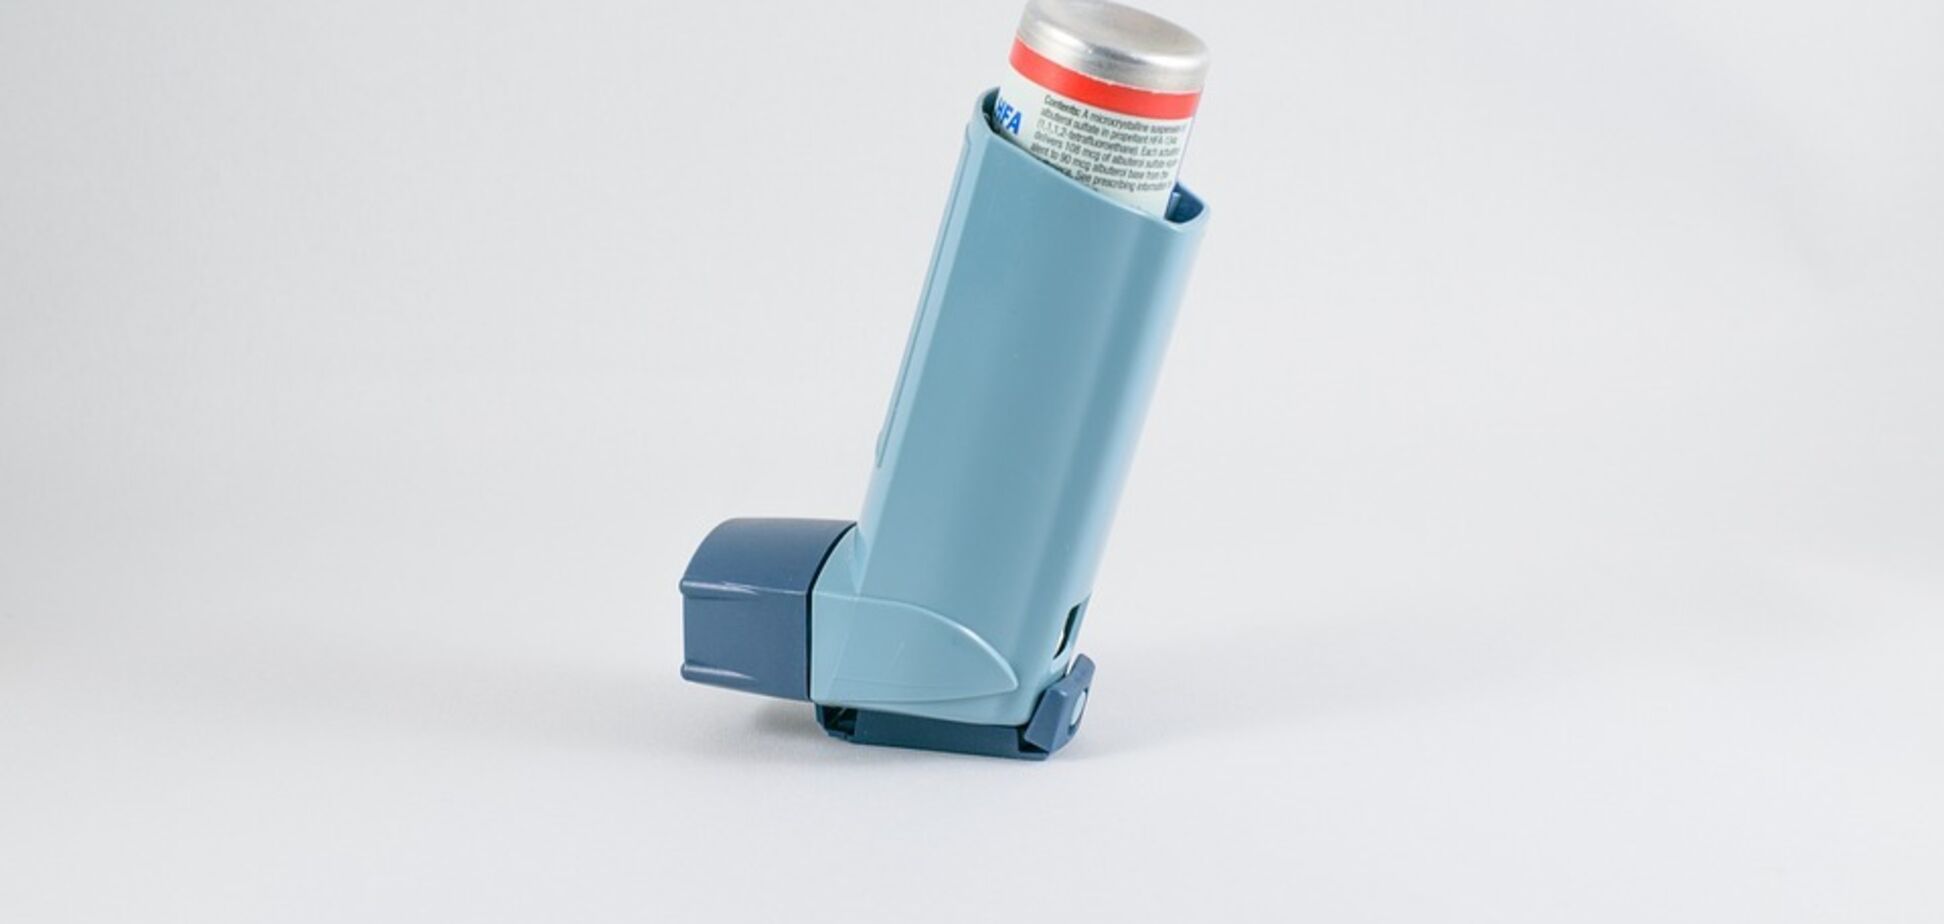 Інгалятори від астми виявилися небезпечними